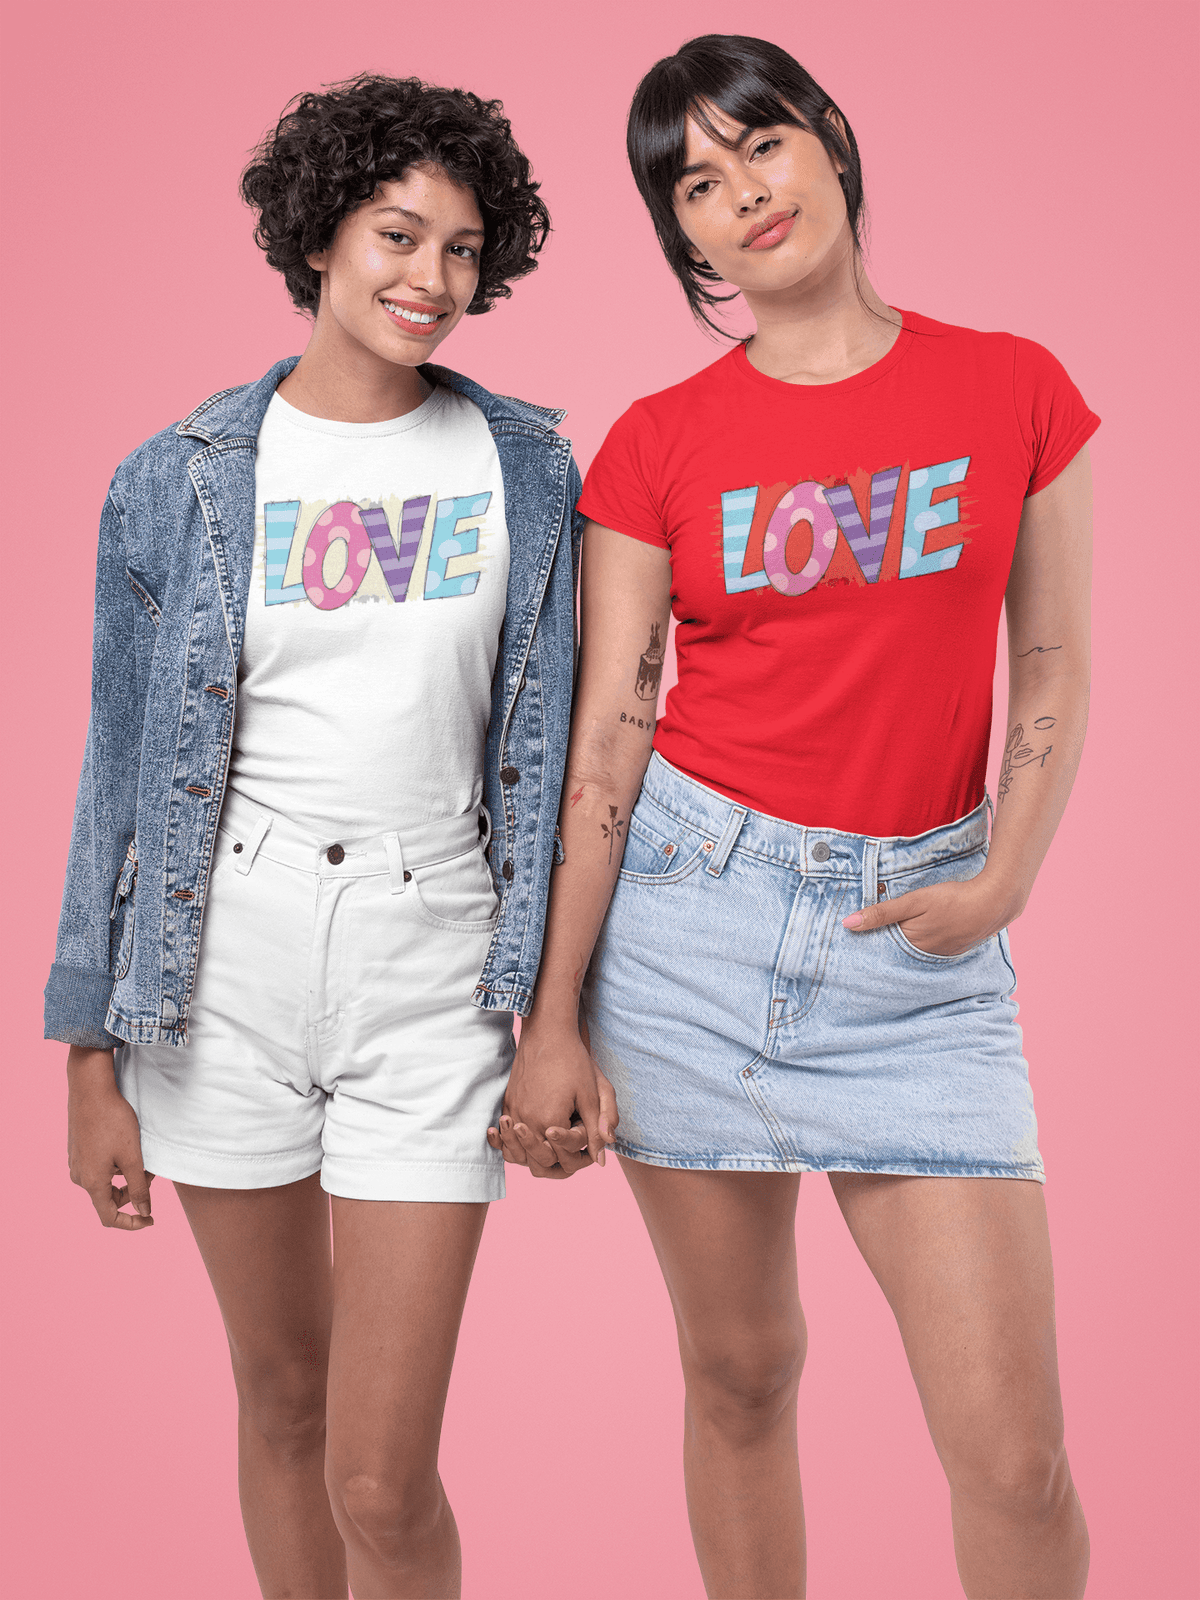 LOVE Valentine T-shirt - StylinArt